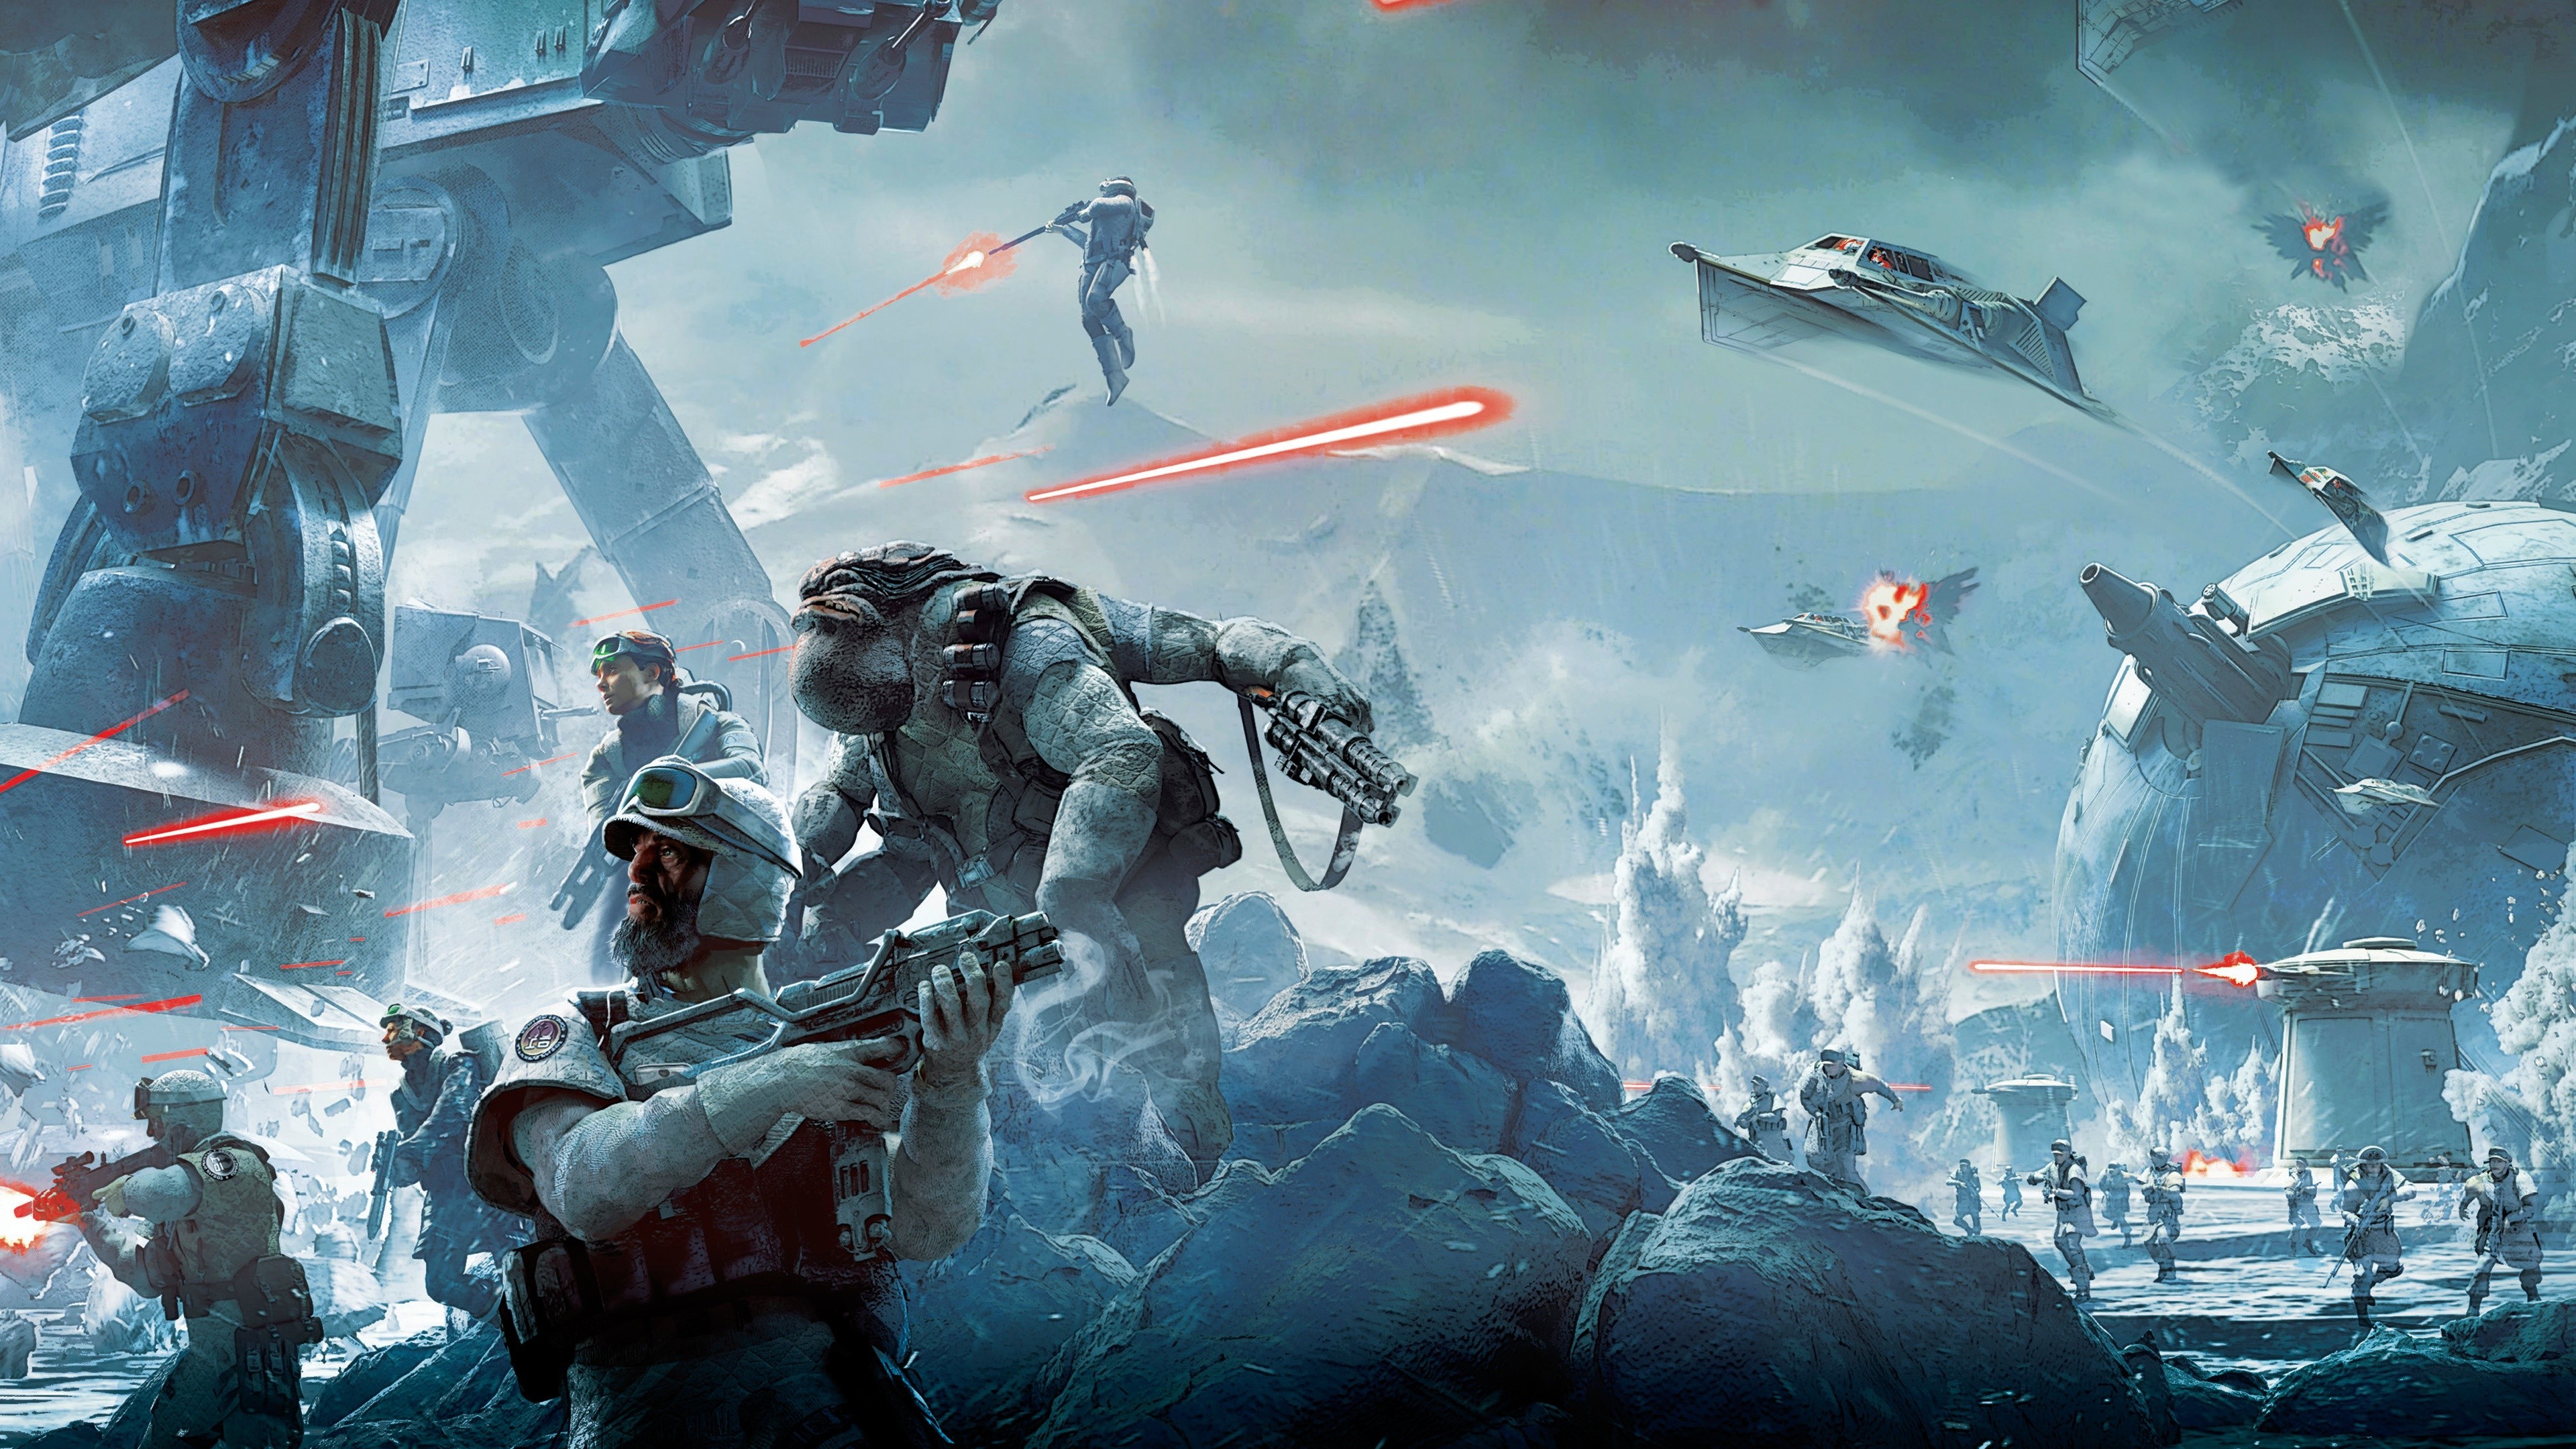 guerra de las galaxias batalla fondo de pantalla,juego de acción y aventura,juego de pc,juegos,mecha,cg artwork